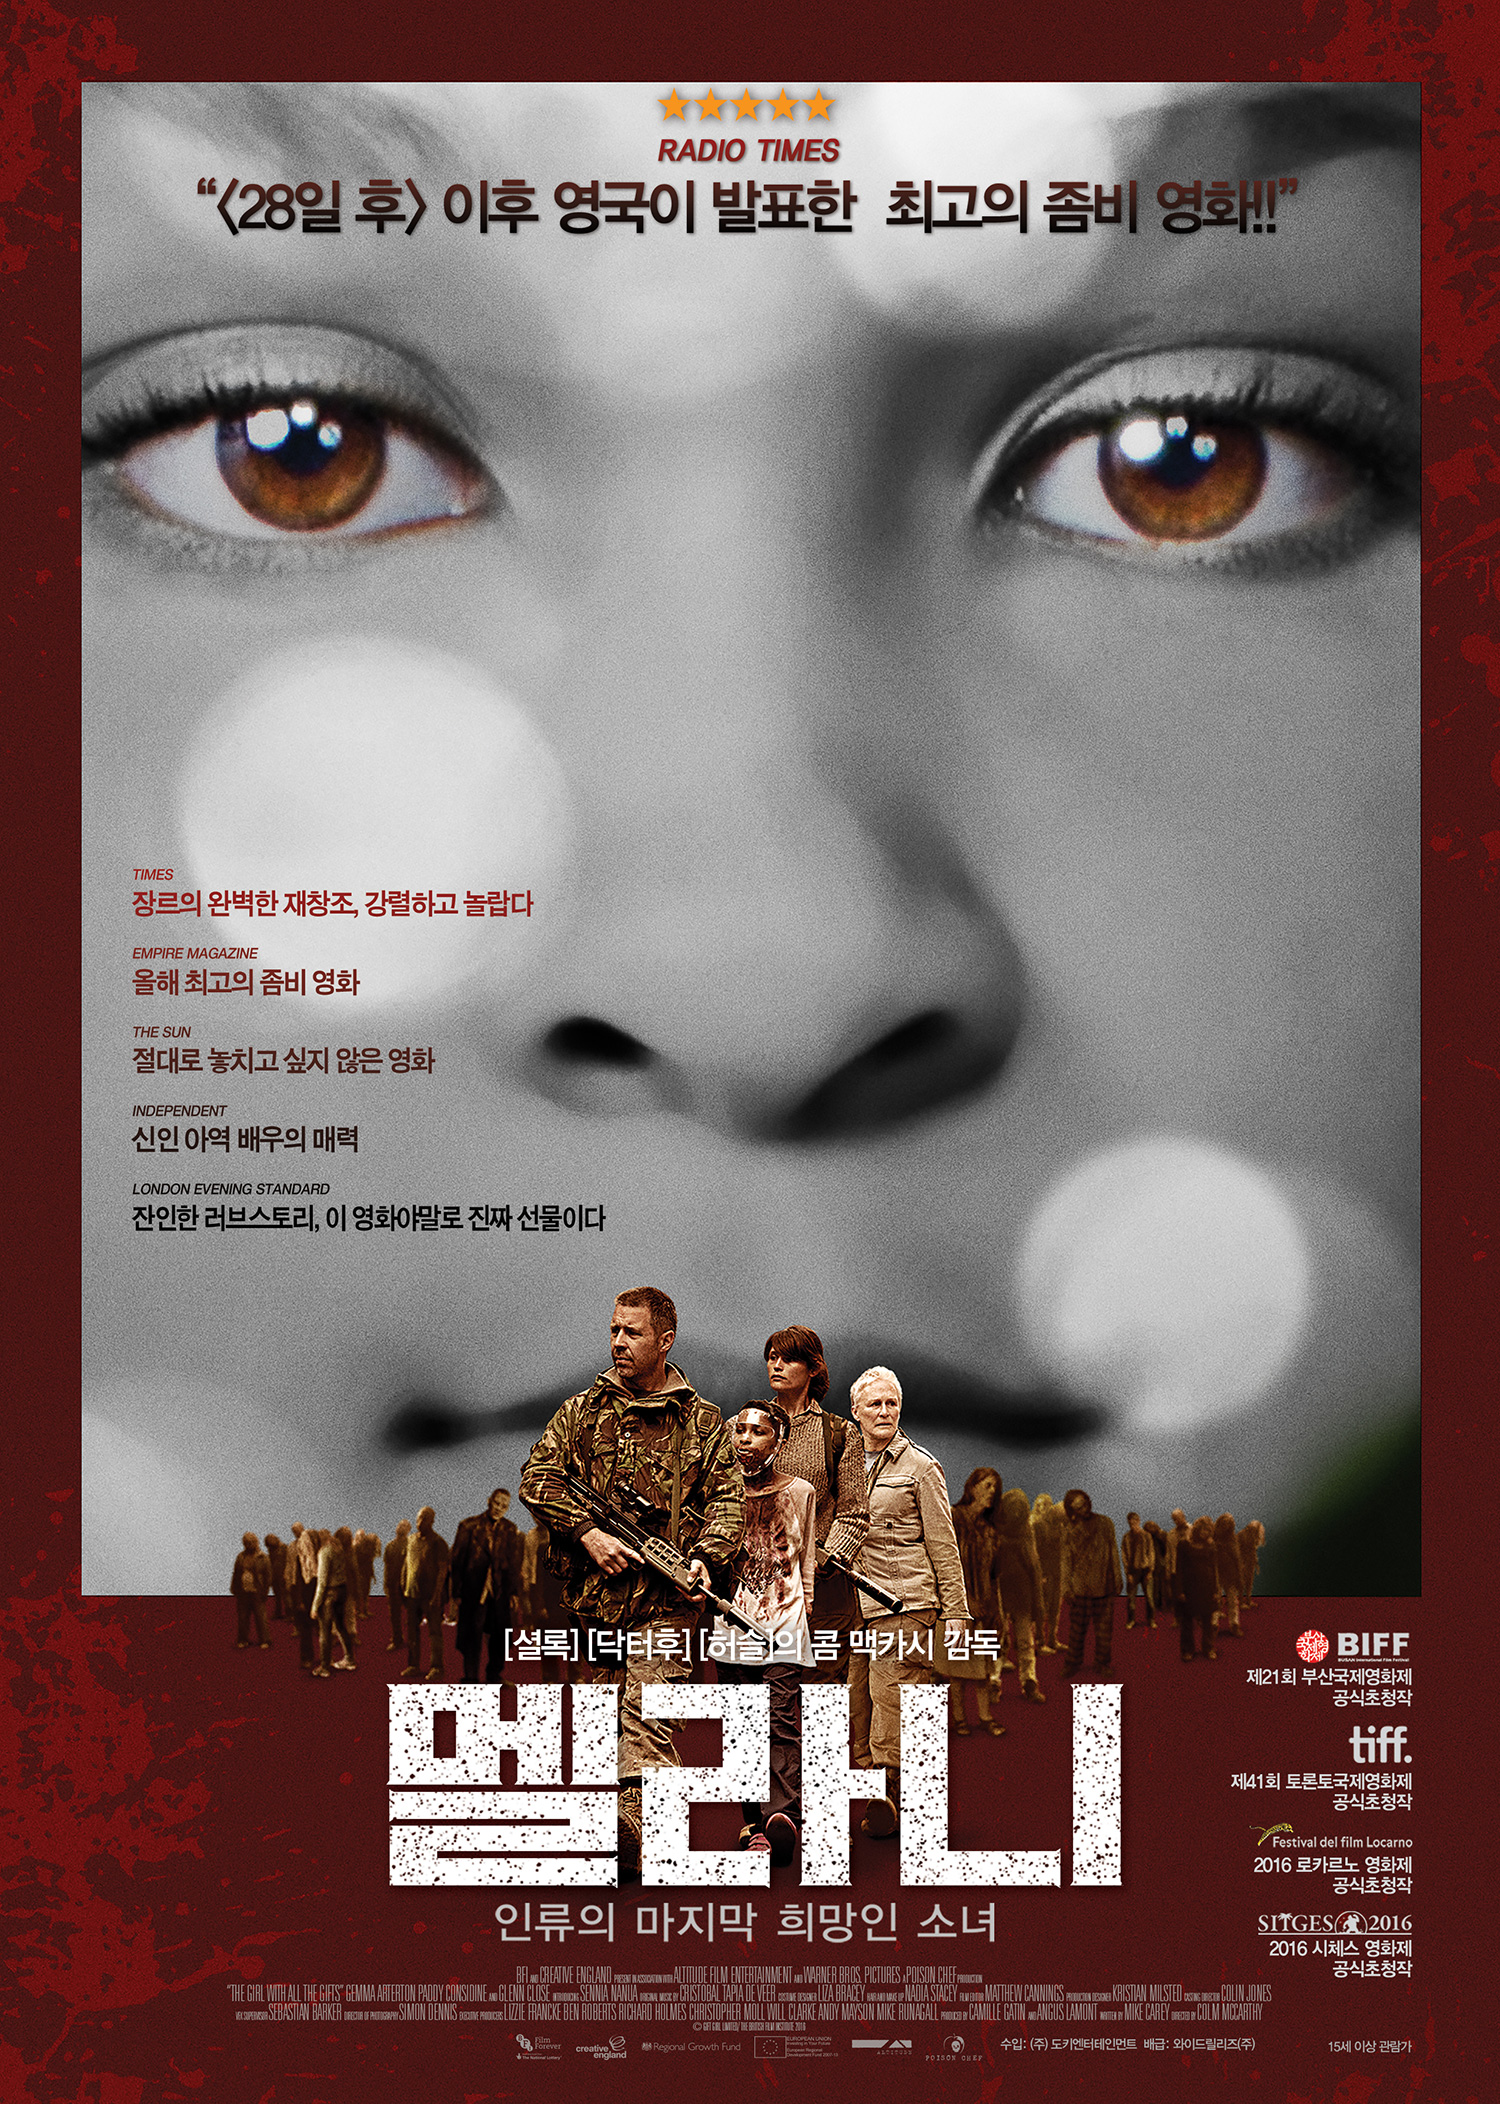 영화 <멜라니>, 좀비 신화 이을 '화제 예감 대작'의 등장!